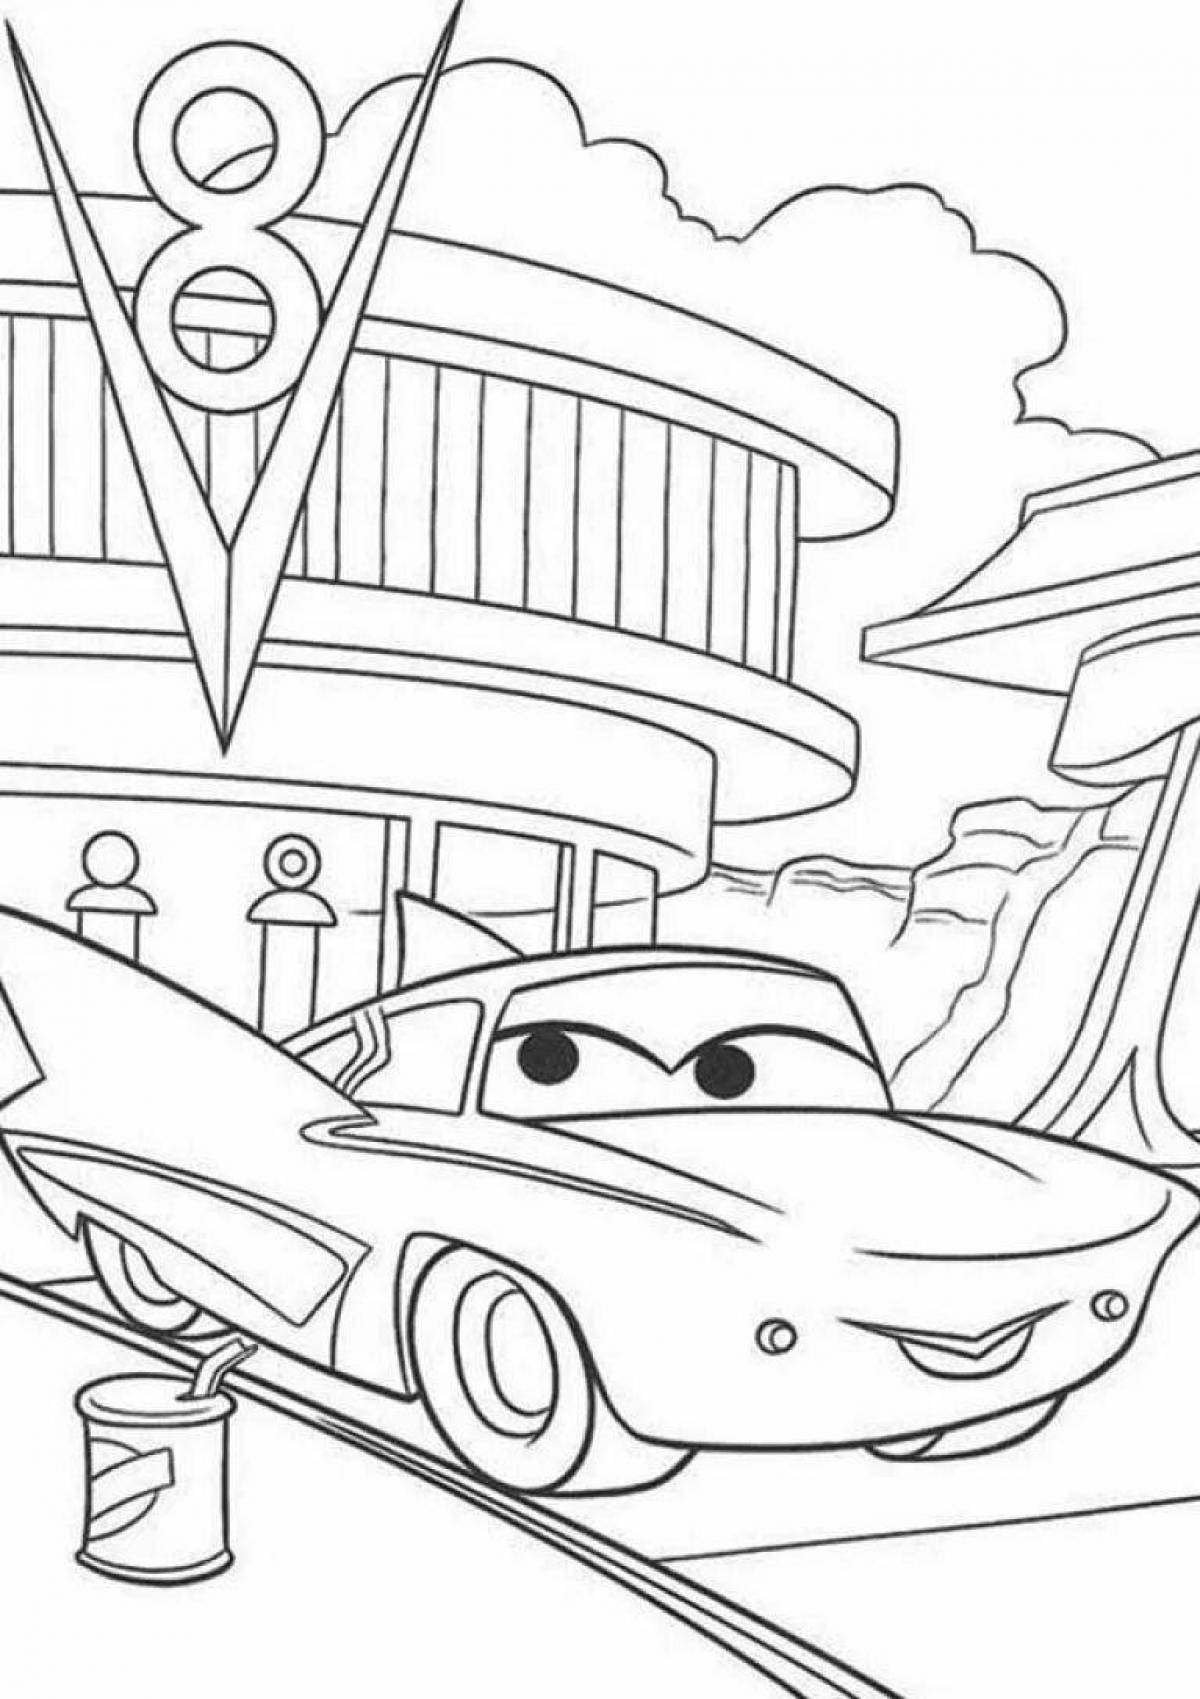 Ramon cars comic coloring book